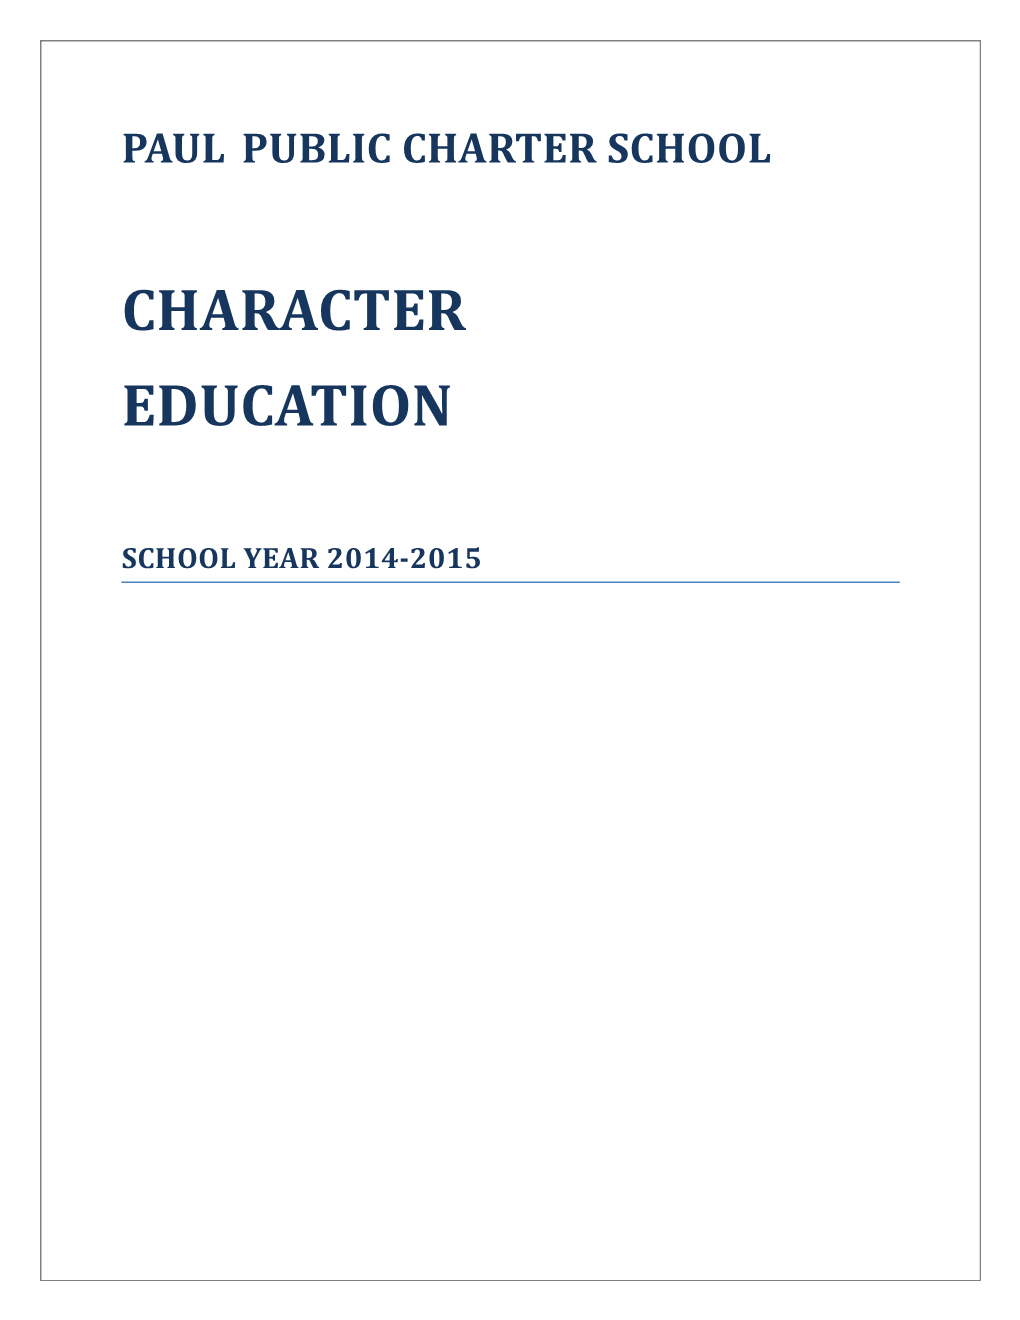 Paul Public Charter School